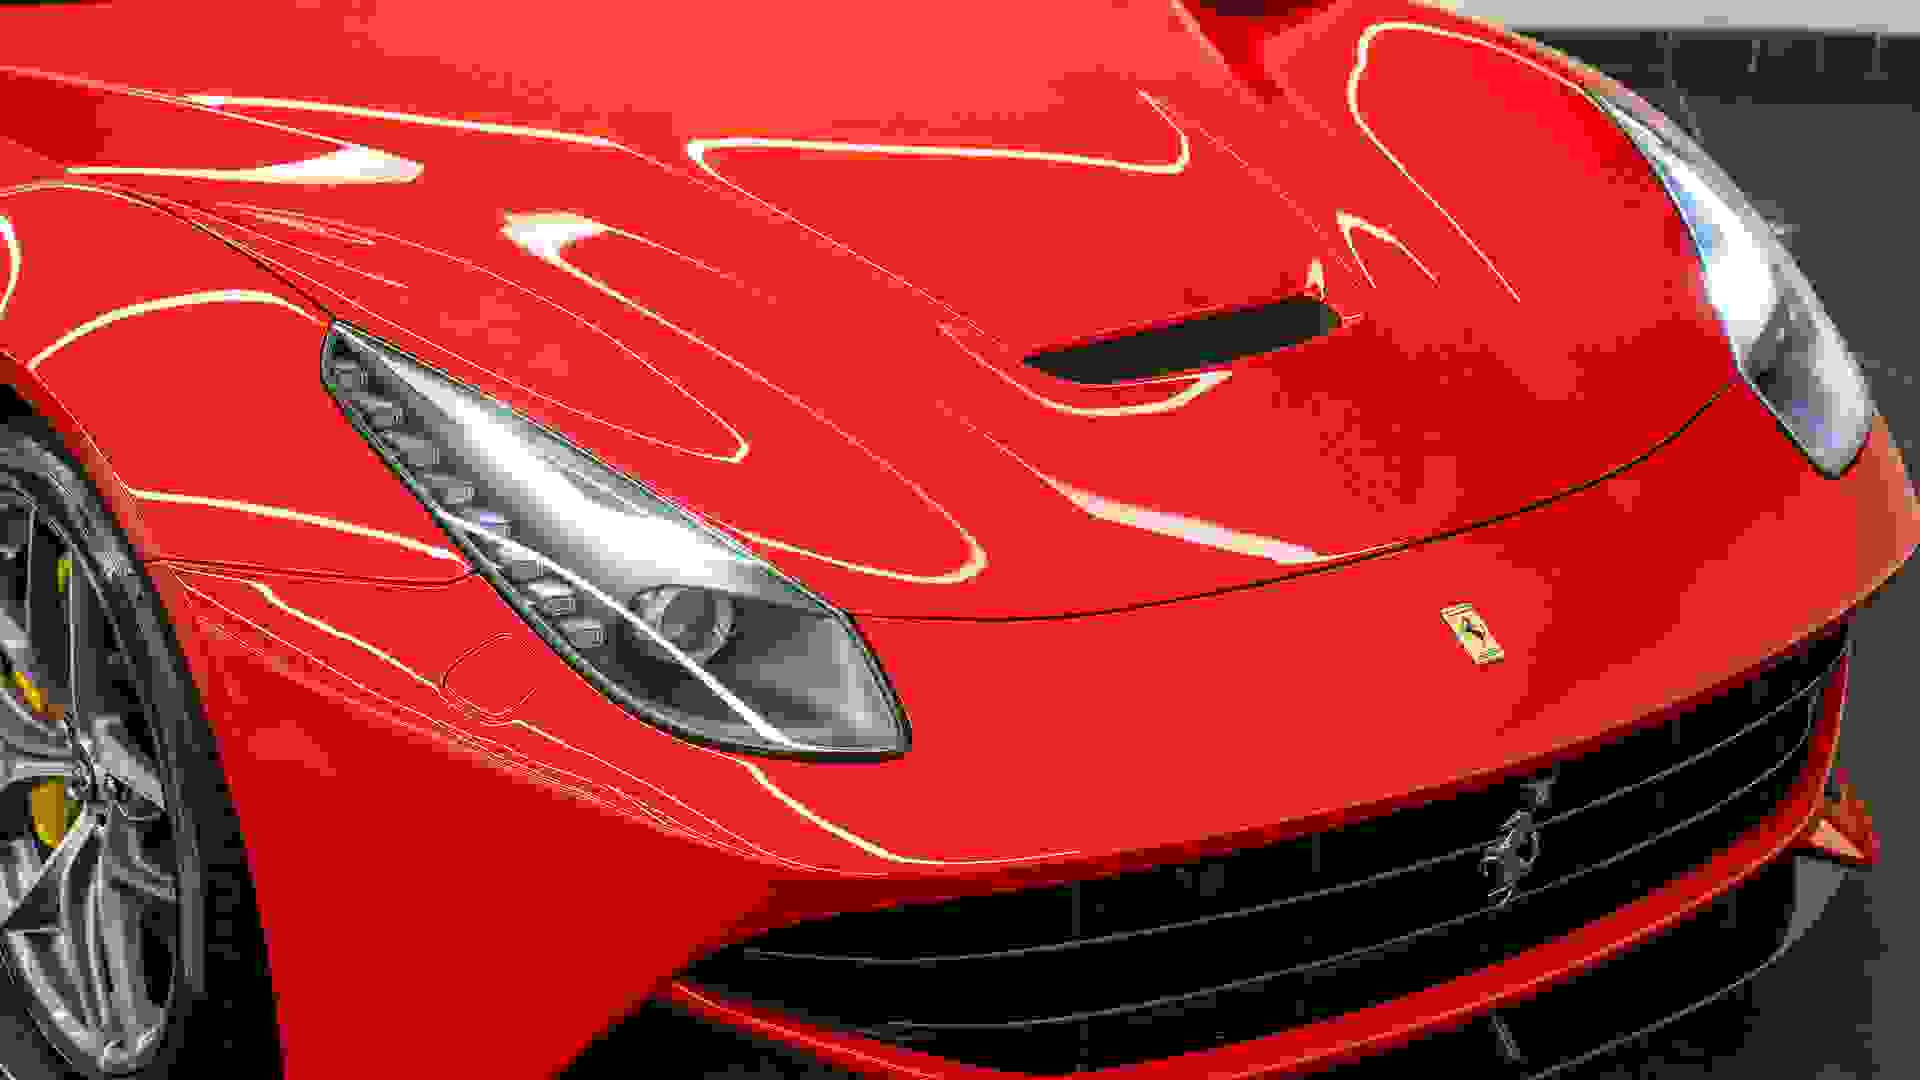 Ferrari F12 Photo 9e8838a3-5eff-47b7-a322-db12b9c5a090.jpg